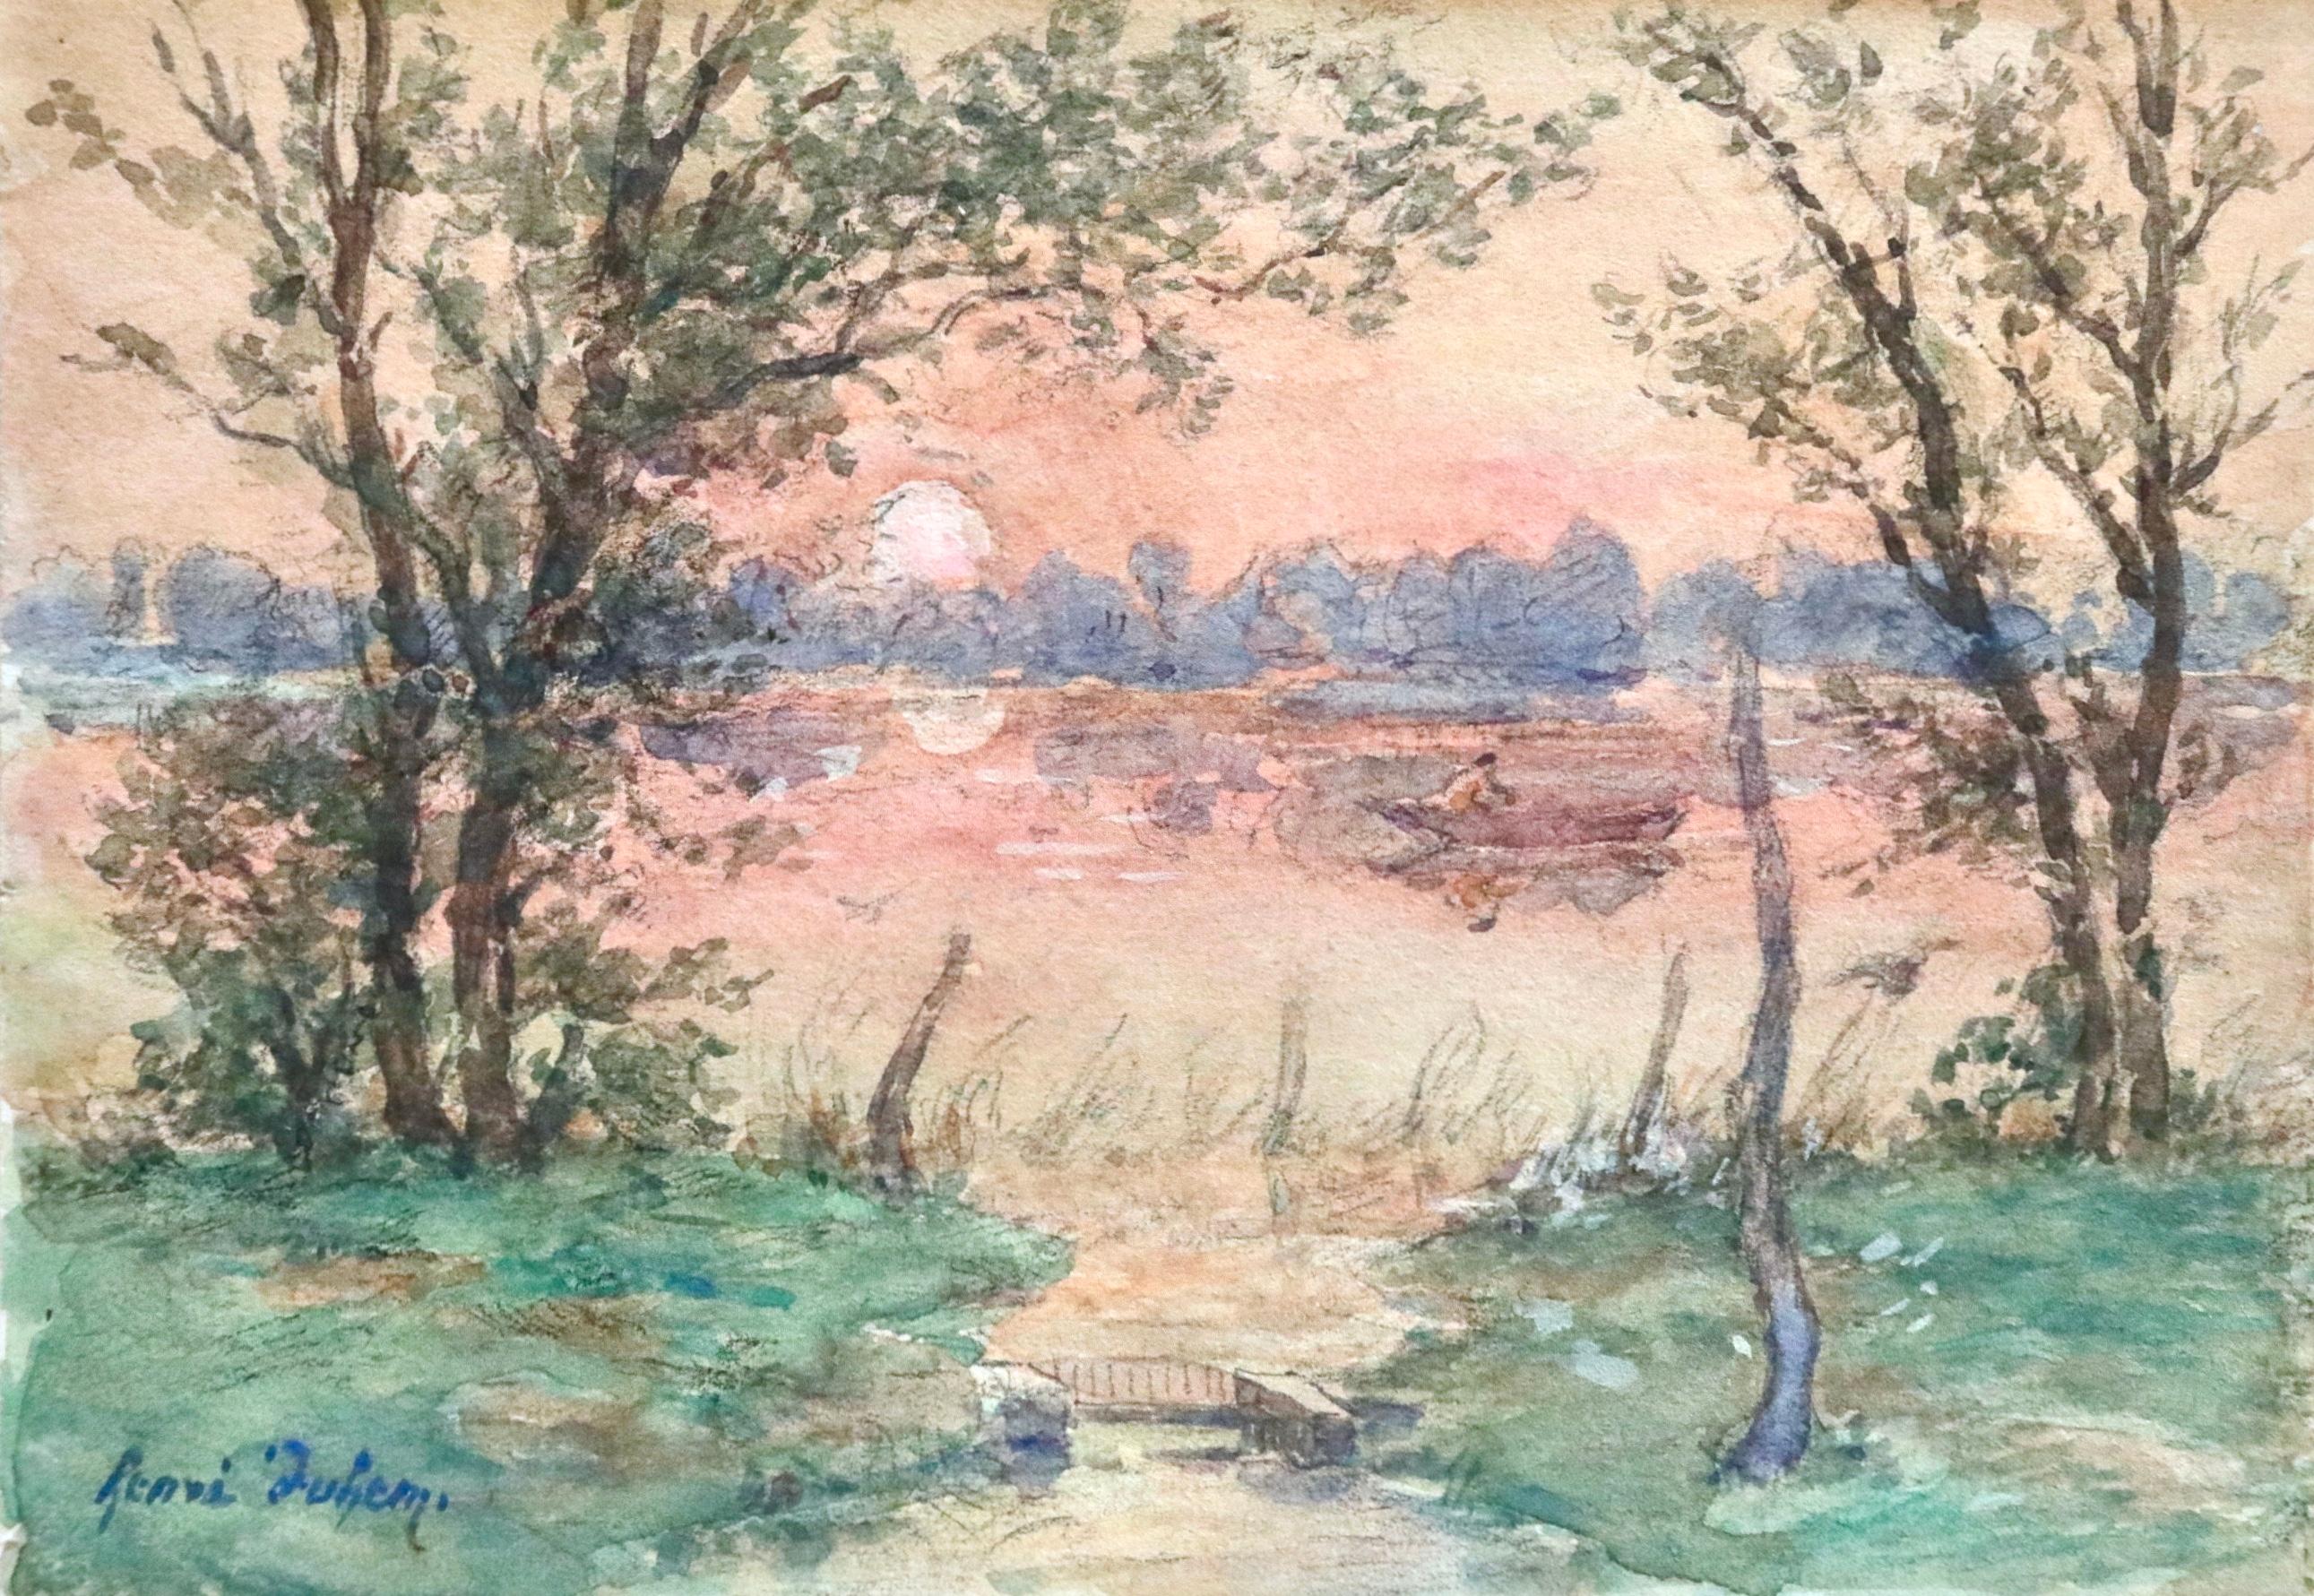 Henri Duhem Landscape Art - Rowing at Sunset - Impressionist Watercolor, Boat on River Landscape by H Duhem